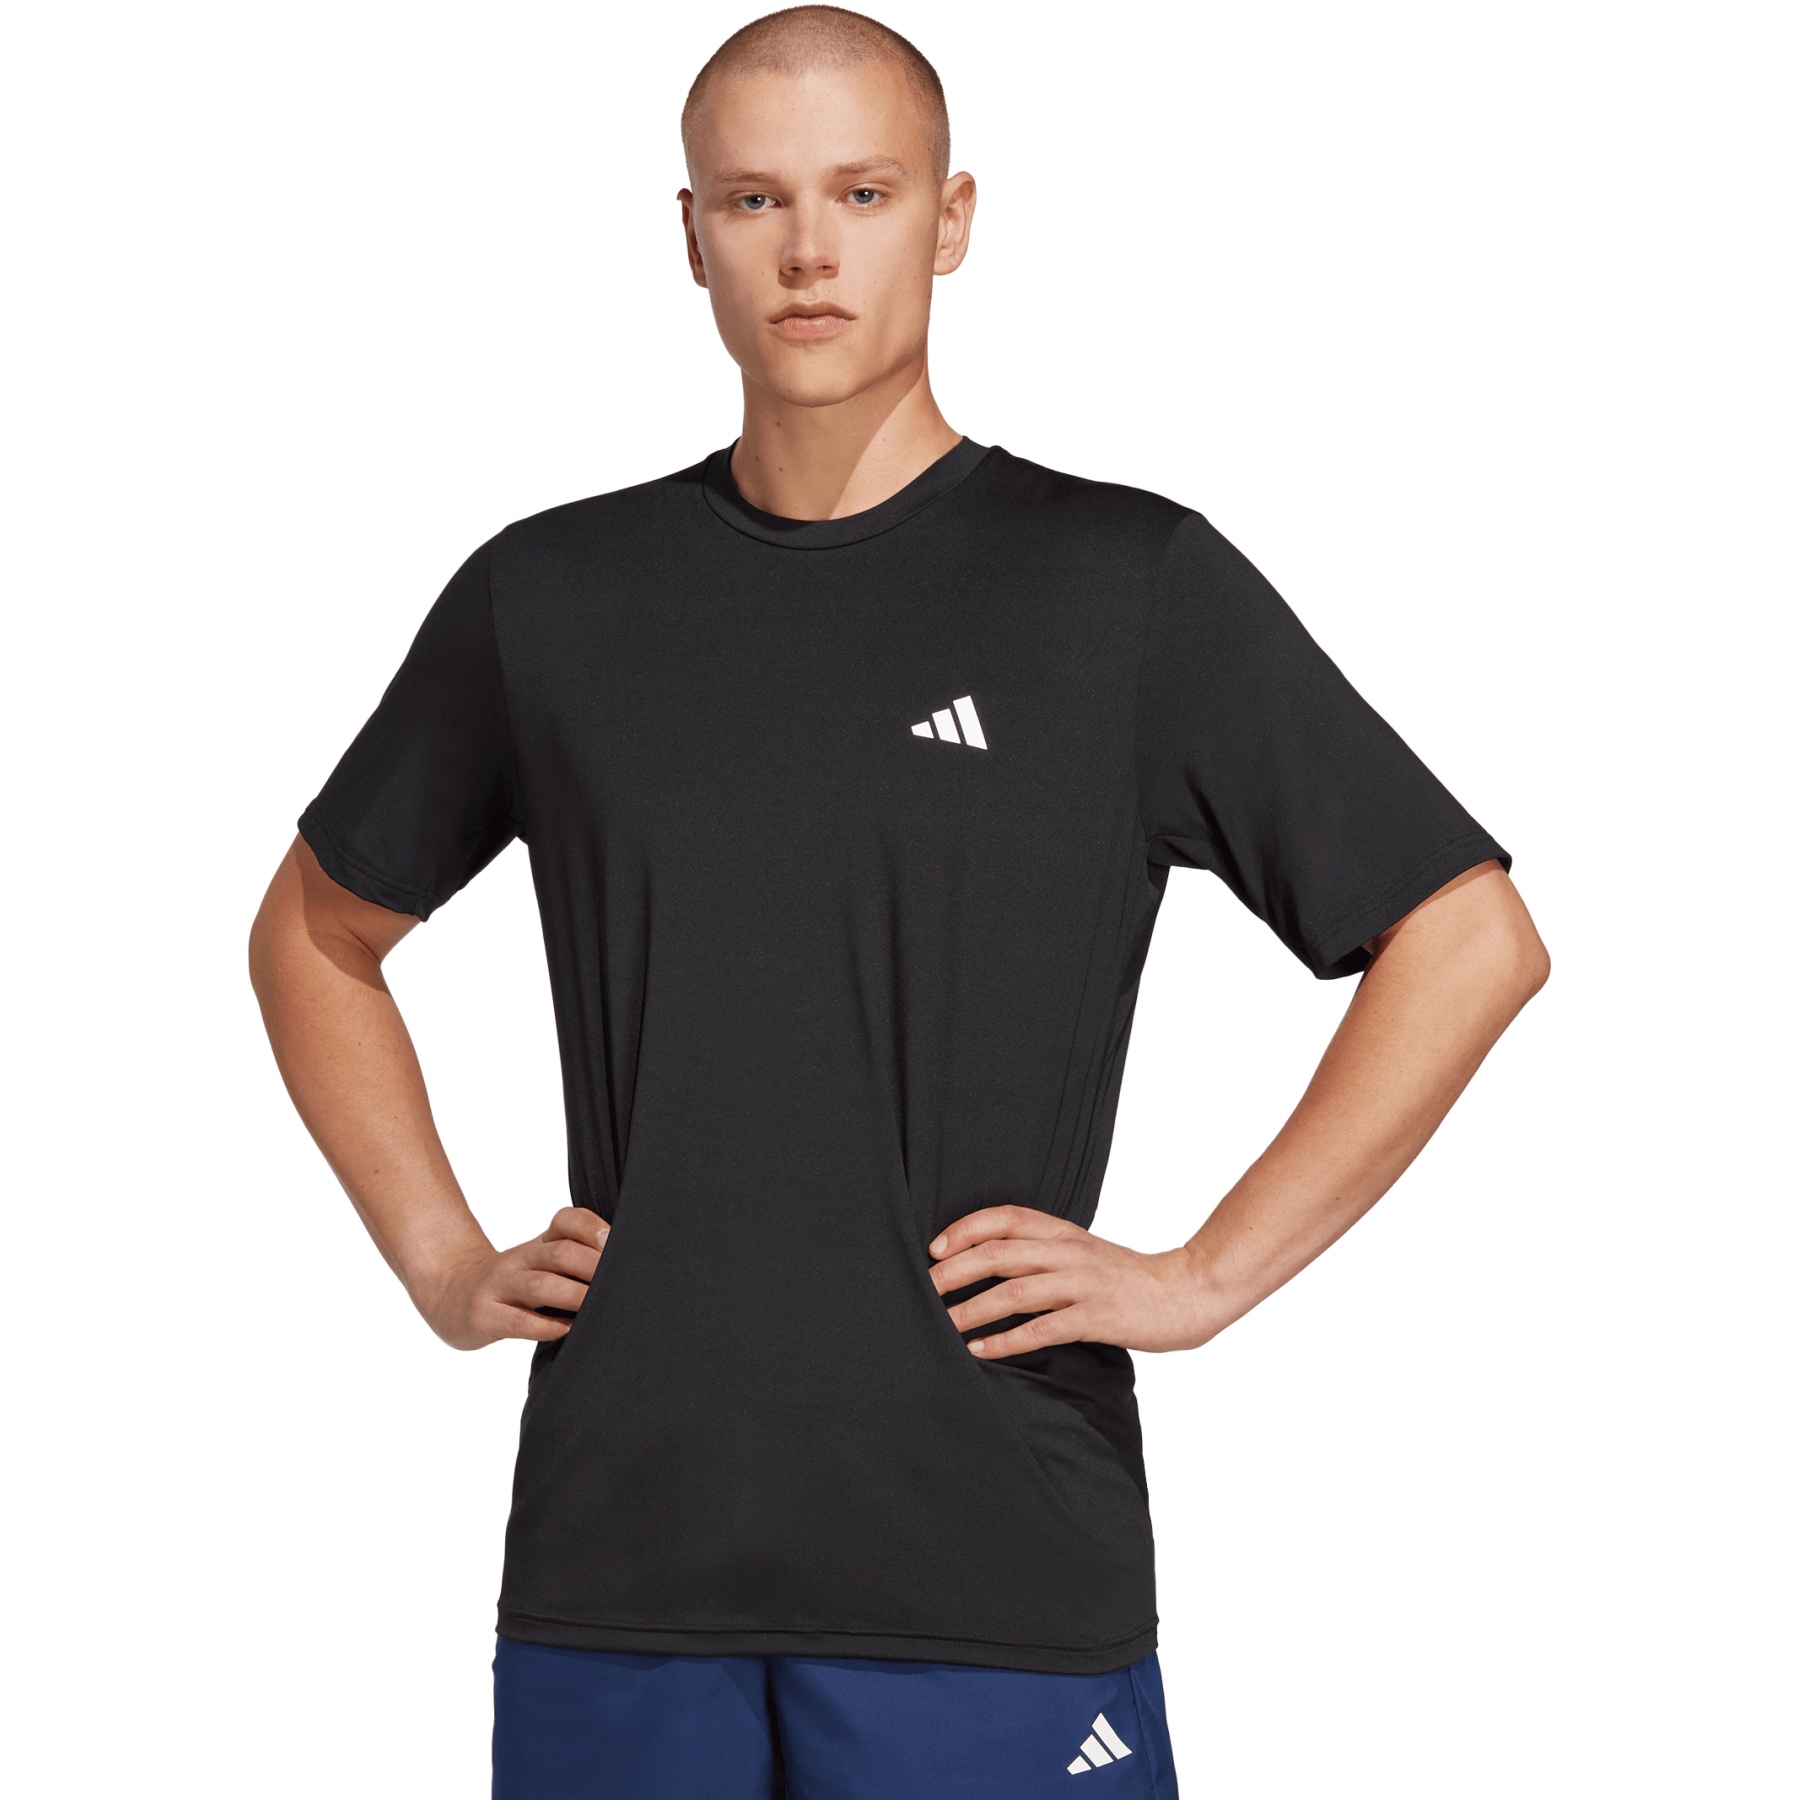 Produktbild von adidas Train Essentials Stretch Training T-Shirt Herren - schwarz/weiß IC7413